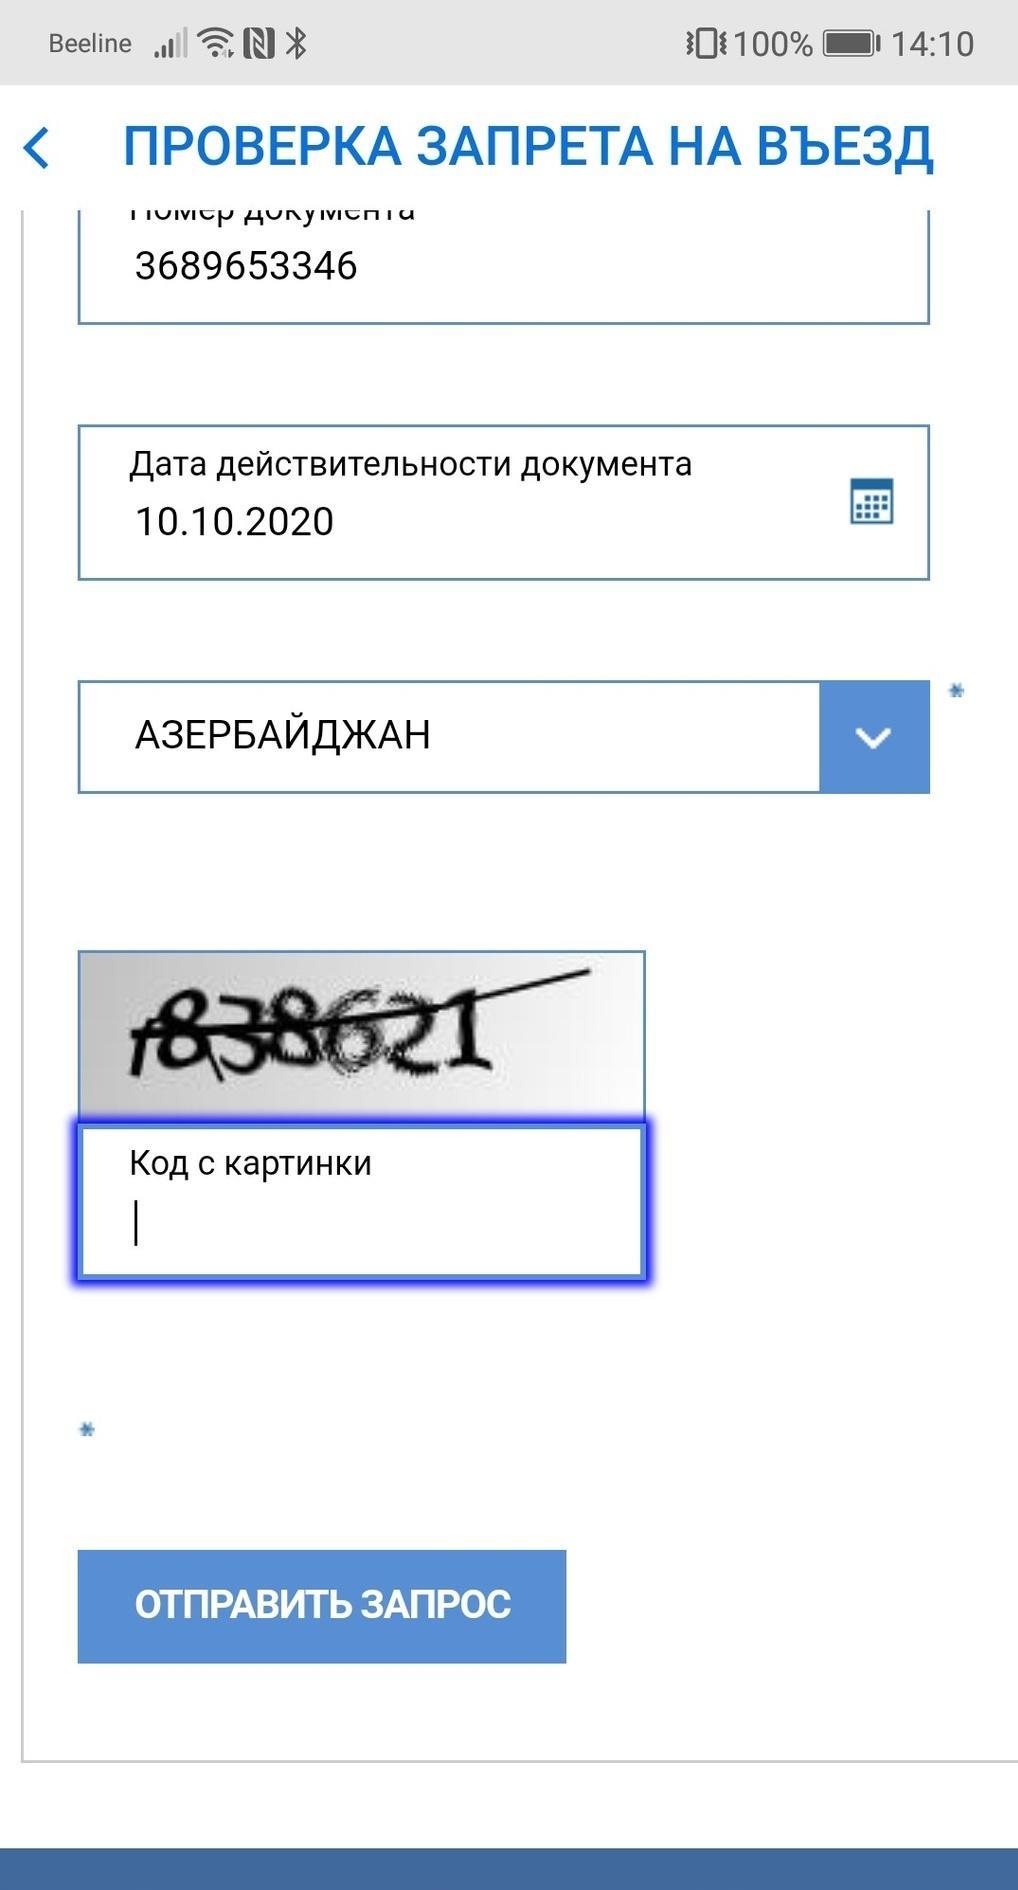 Service fms проверка запрета. Проверка запрета. Проверить запрет на въезд. Проверка запрета на въезд в Россию. Как можно проверить запрет.